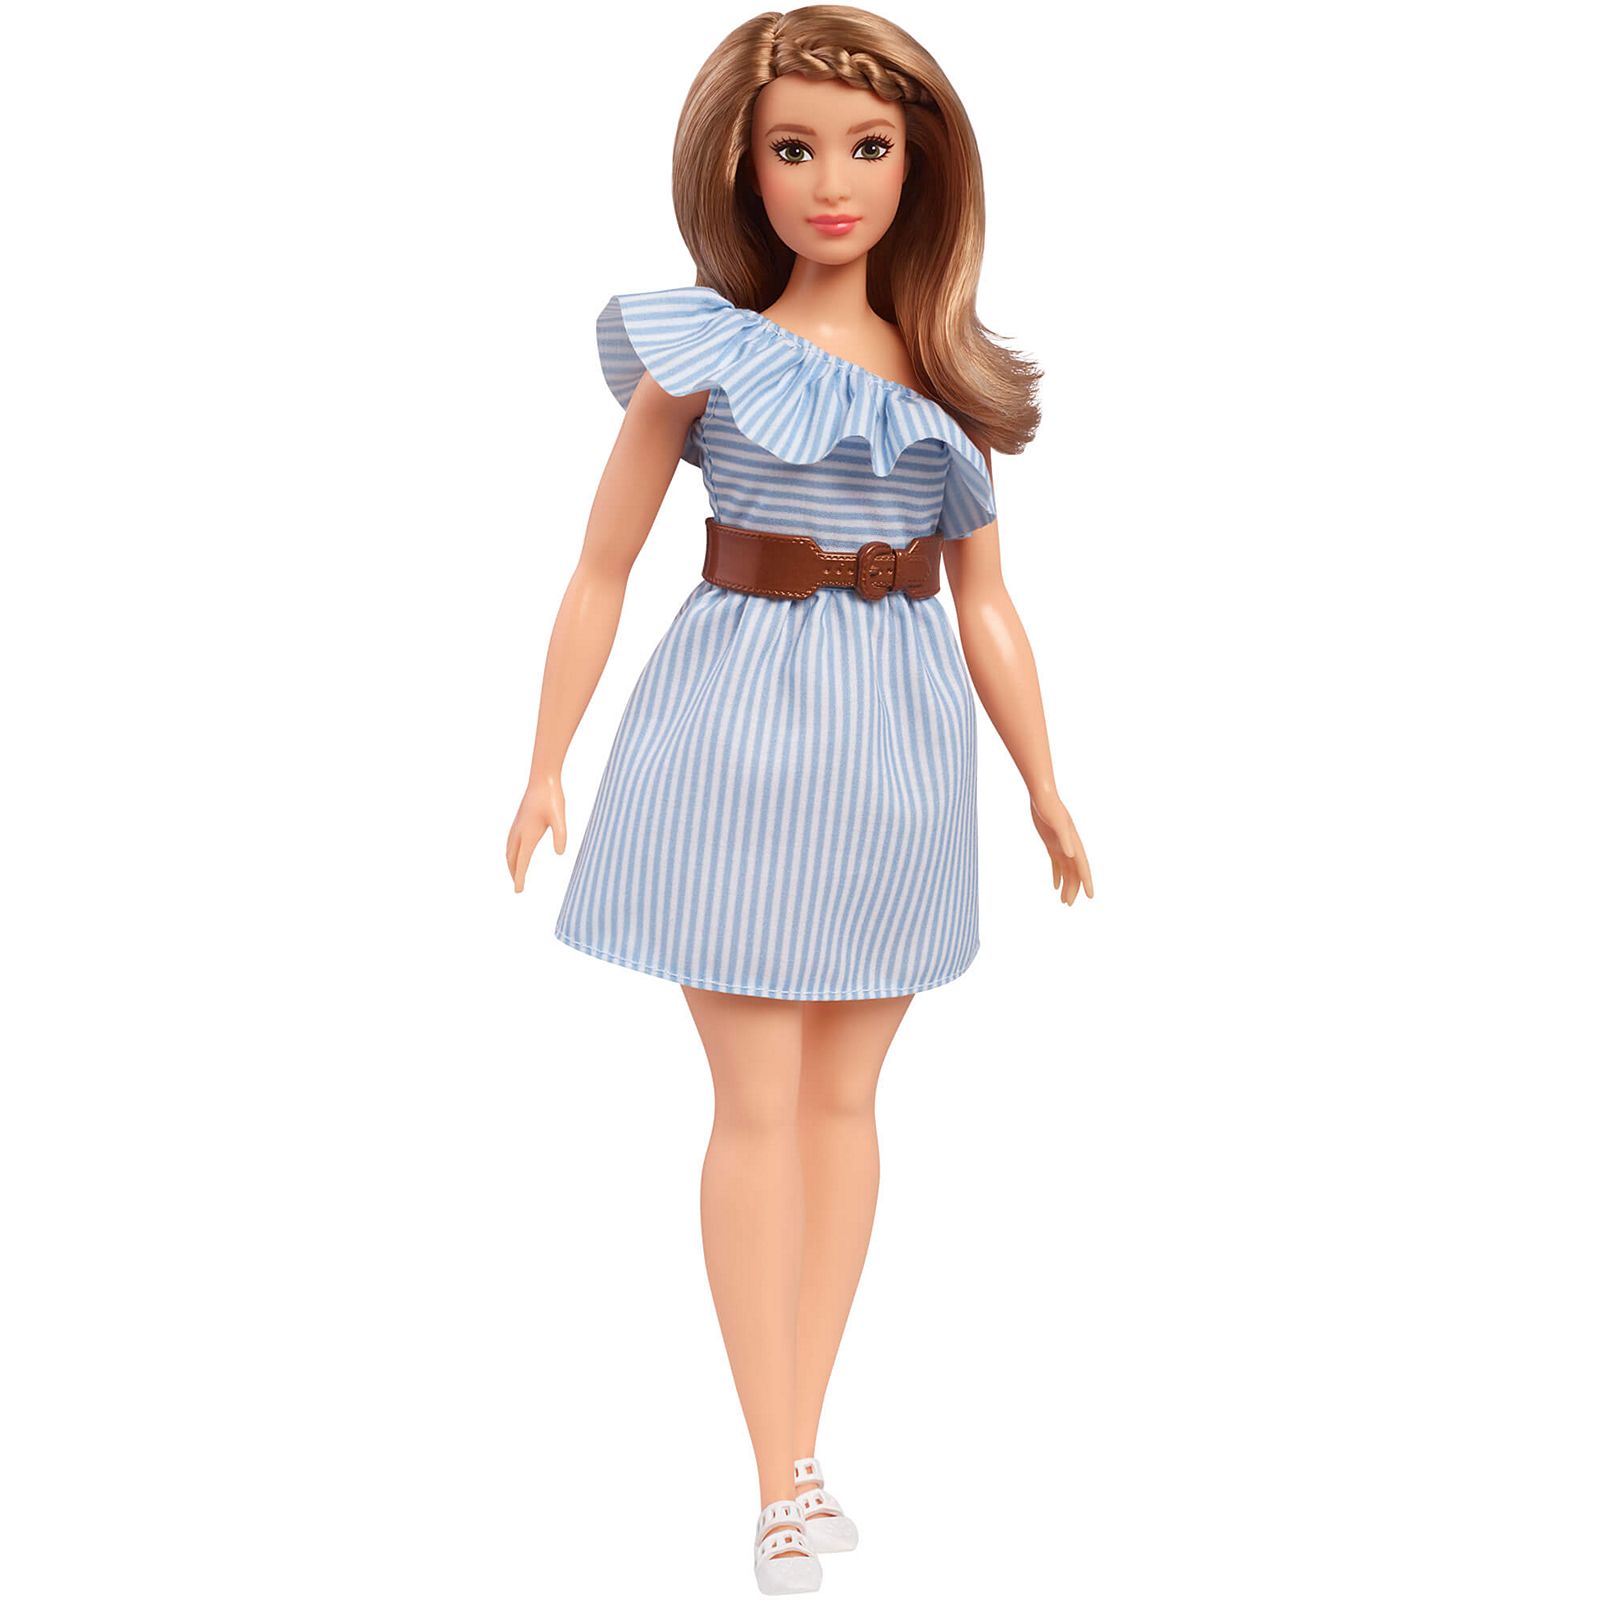 Barbie Clothes Cricut